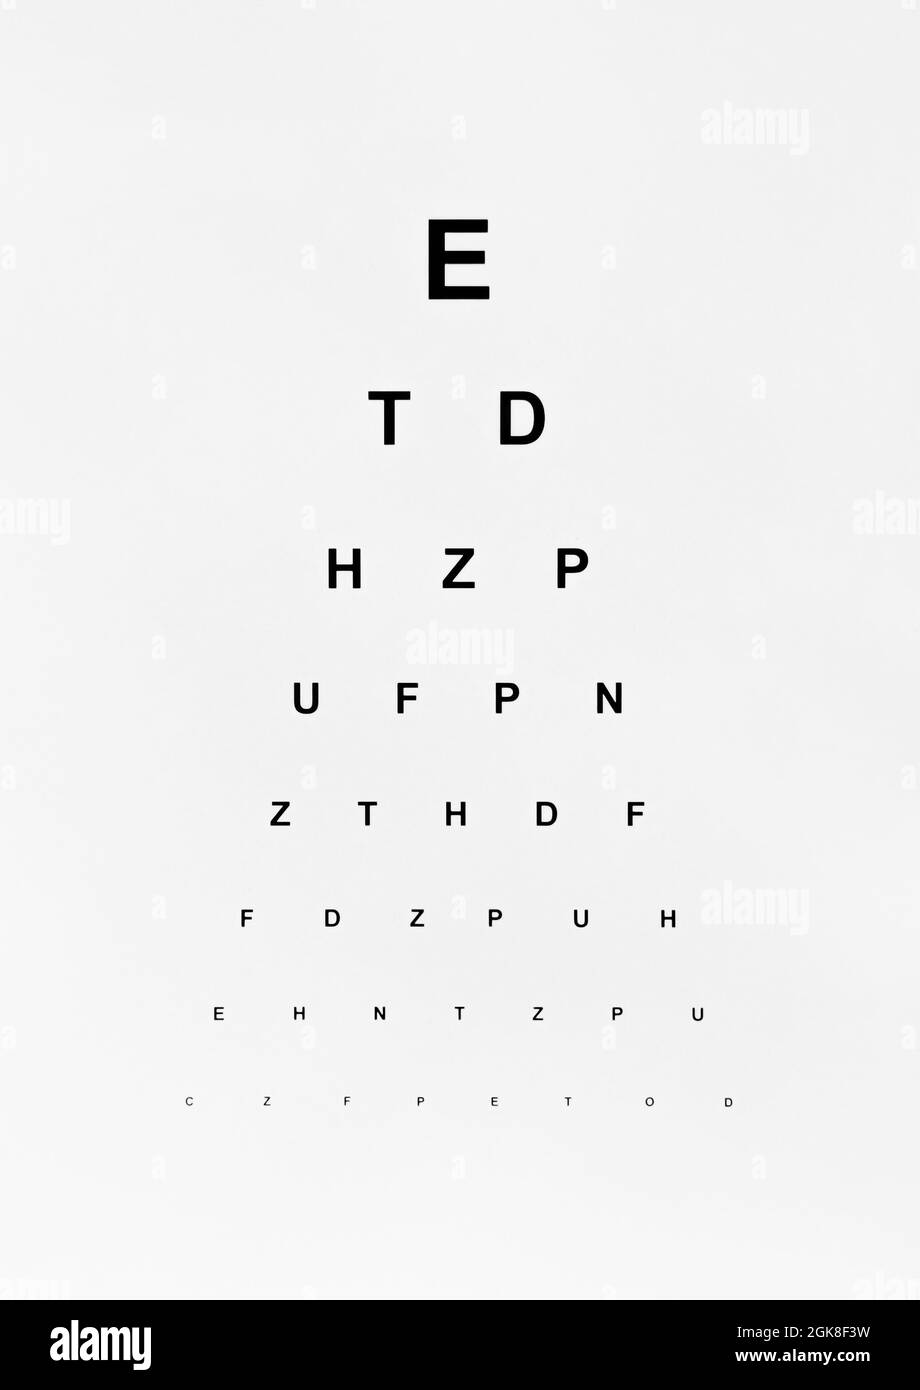 Eye test chart. Isolated on white background. Stock Photo